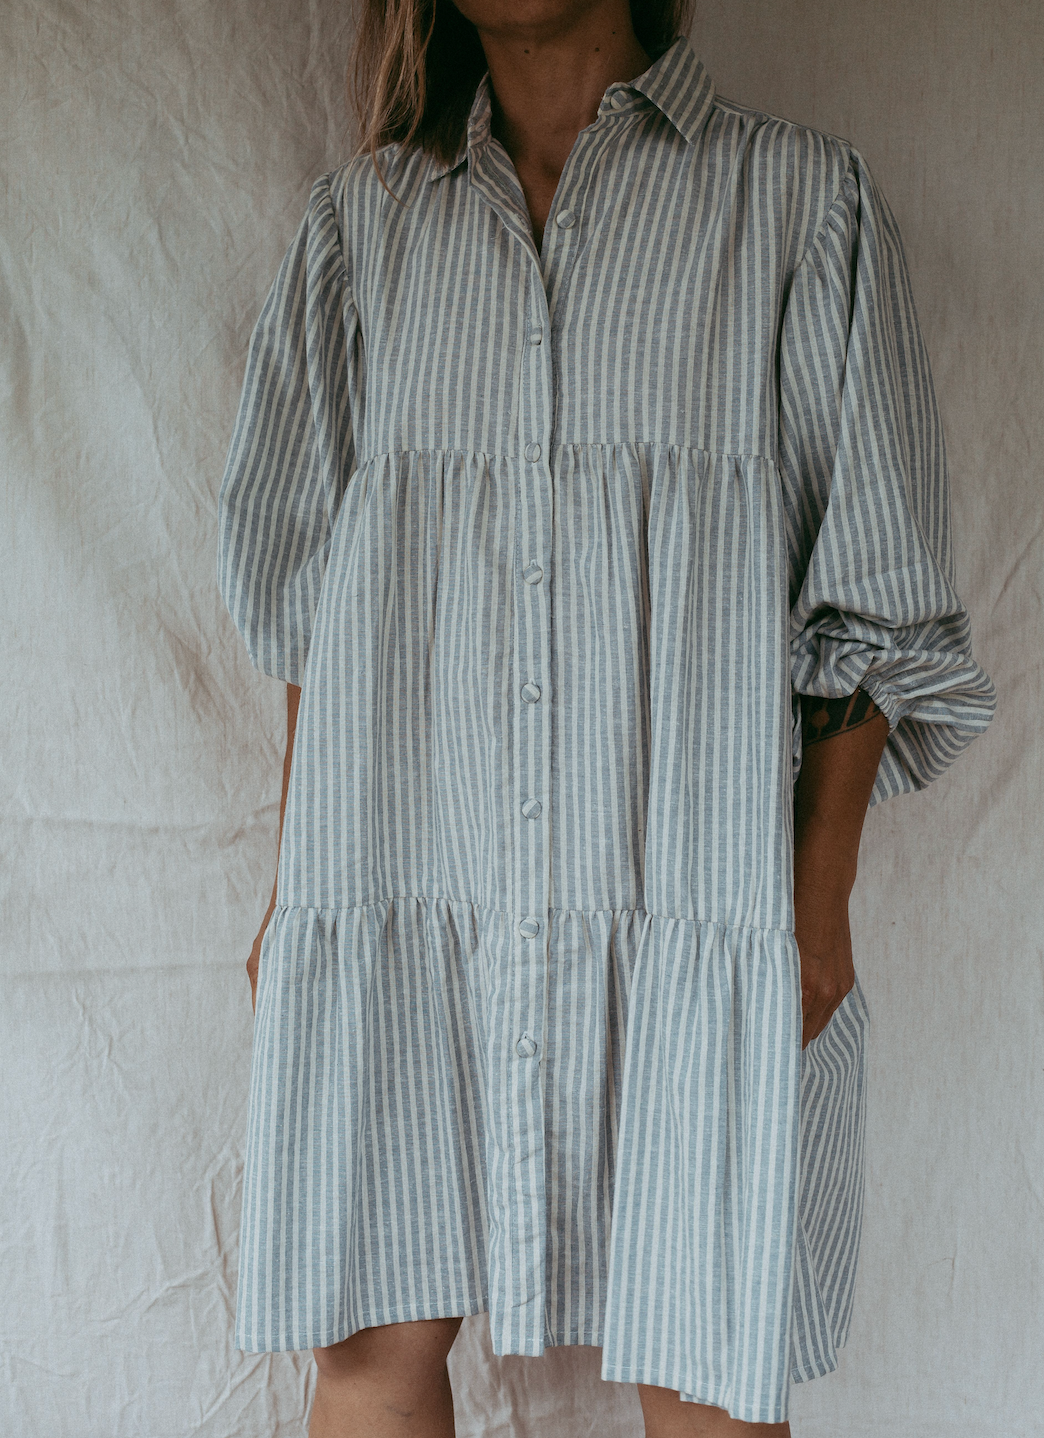 Lizze Dress - Stripe Linen